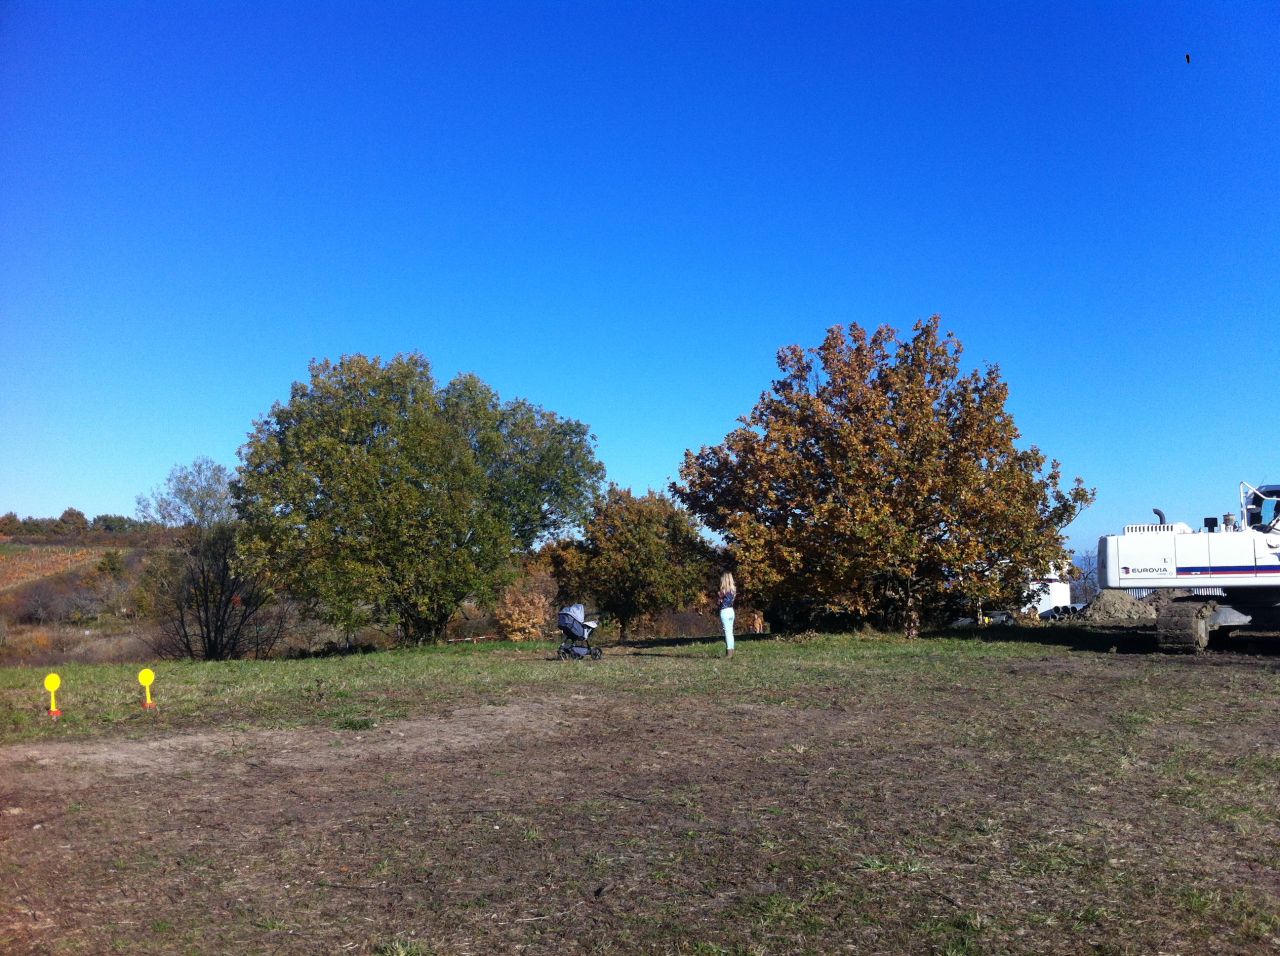 ici une Photo de l'automne dernier, le terrain fait 530m.
<br />
On aurait aim un peu plus grand mais bon question de budget on a choisi un terrain a peu prs plat et dans notre budget 
<br />
On peut y voir 2 arbres que nous allons devoir Abattre.